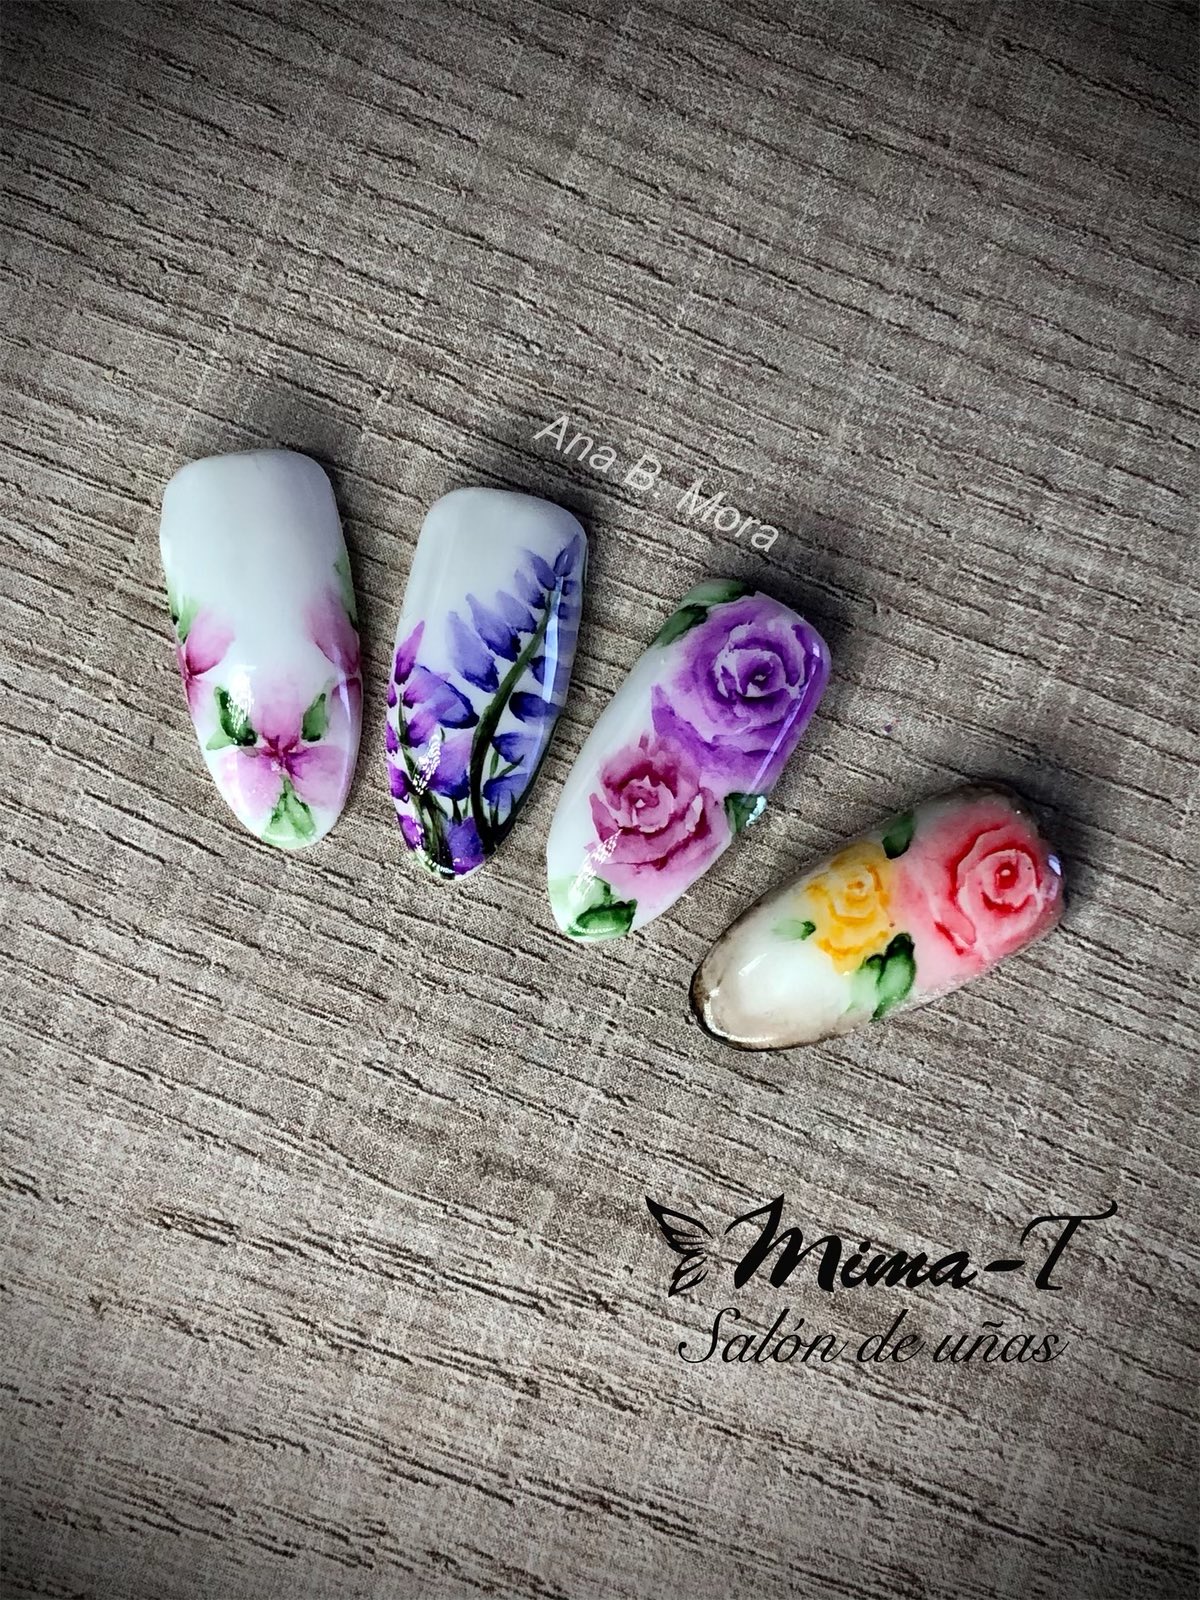 Arruinado egipcio facil de manejar Mima-T Salón de uñas on Twitter: "Decoración a mano alzada con acuarelas  💅🏼ANA B. MORA💅🏼 #flores #flowers #acuarela #micropintura #mimat #uñas # nails #nailart #nailsart #naiartist #decoraciondeuñas #uñasdecoradas  https://t.co/zX1wZX9px6" / Twitter